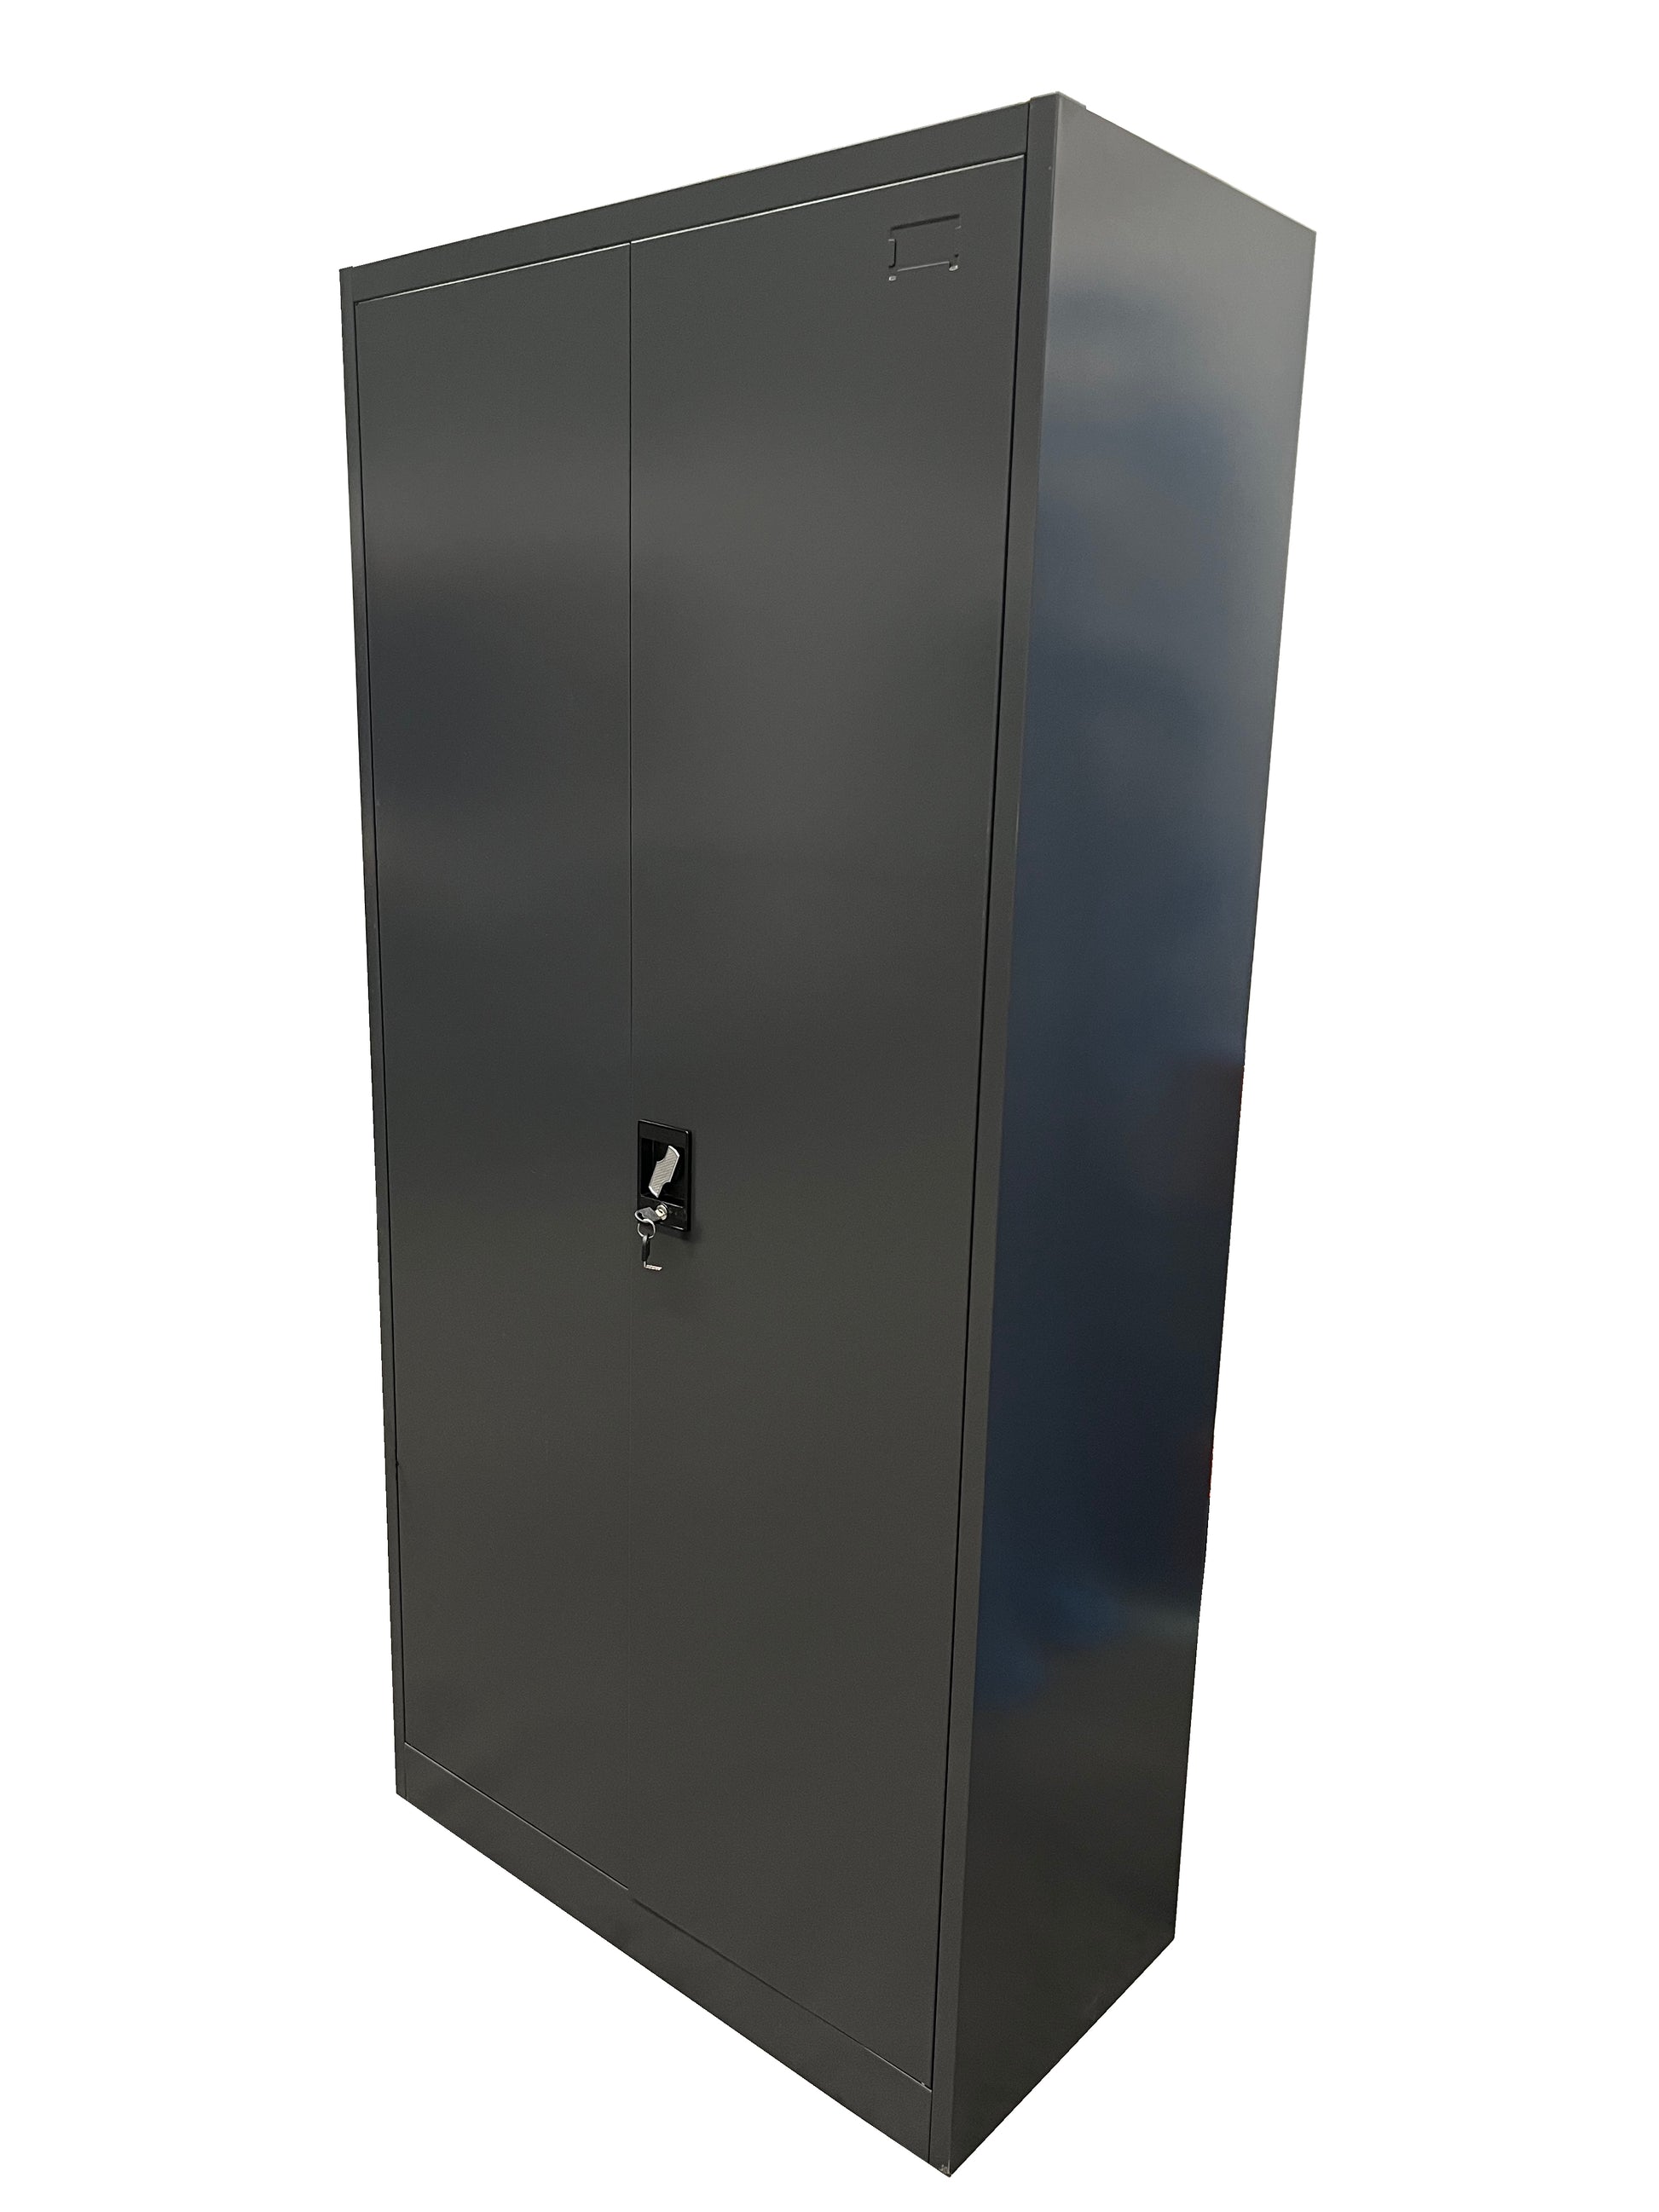 2 Door Lockable Cabinet - 4 adjustable shelves